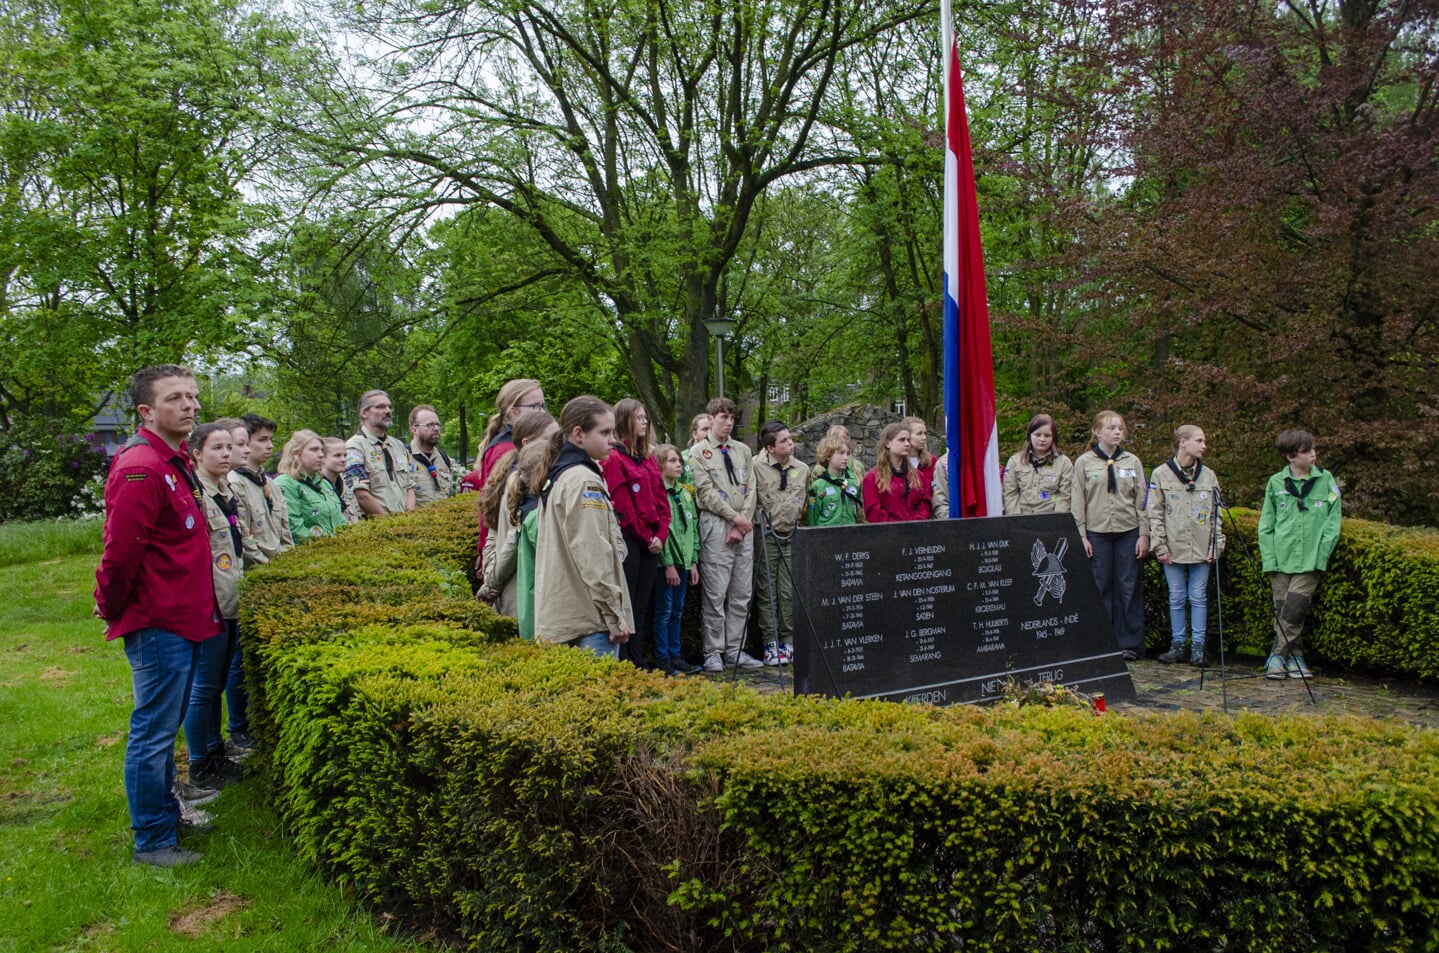 Dodenherdenking in Boxtel verliep nat. Toch kwamen er veel mensen naar de dienst in de Sint-Petrusbasiliek en de daaropvolgende kranslegging bij het (tijdelijke) monument in het Processiepark. 